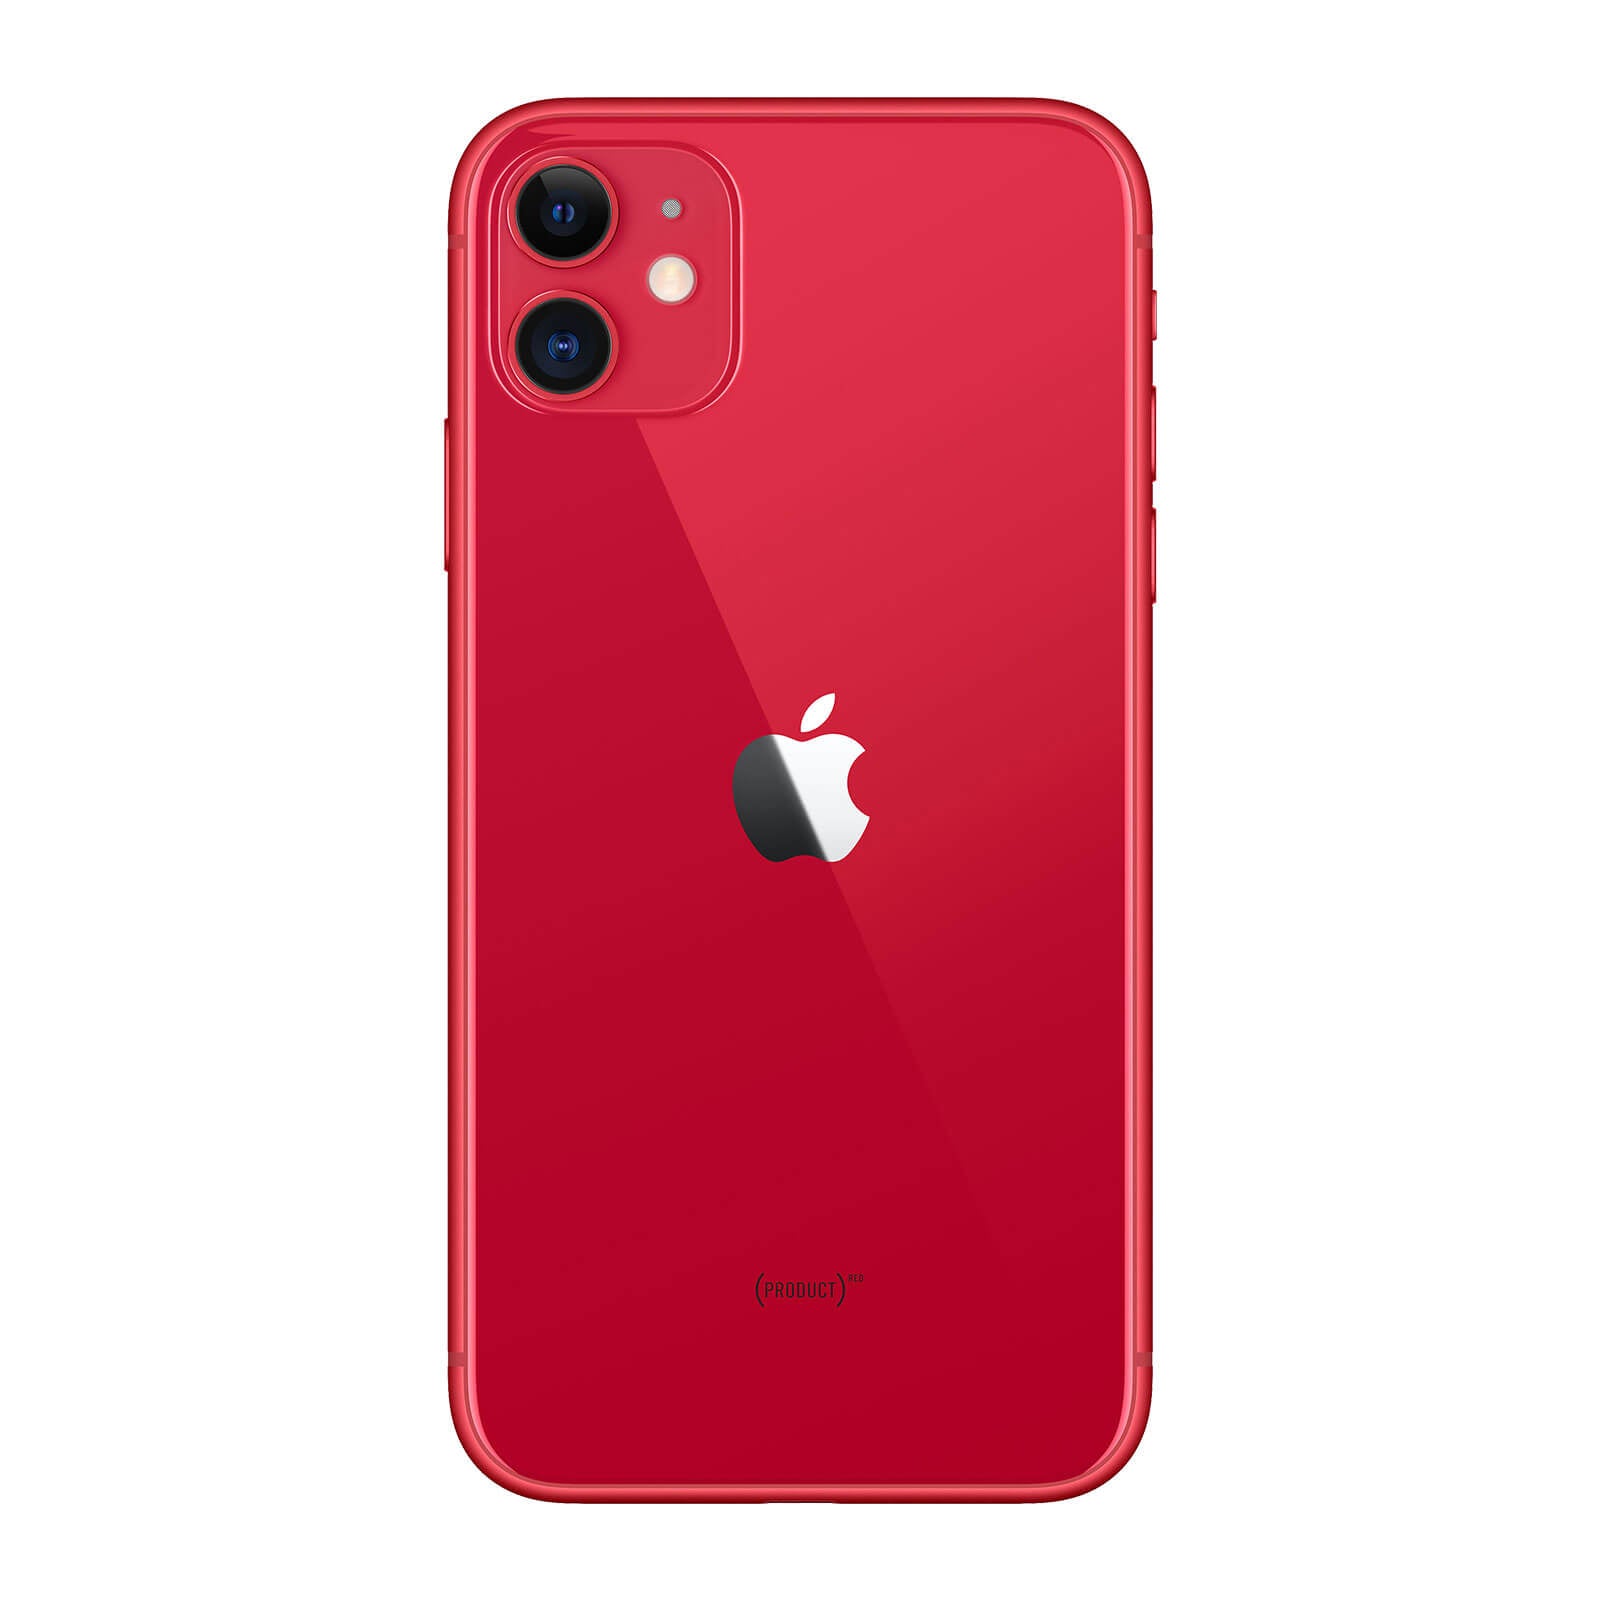 Apple iPhone 11 128GB Rosso Buono Sbloccato